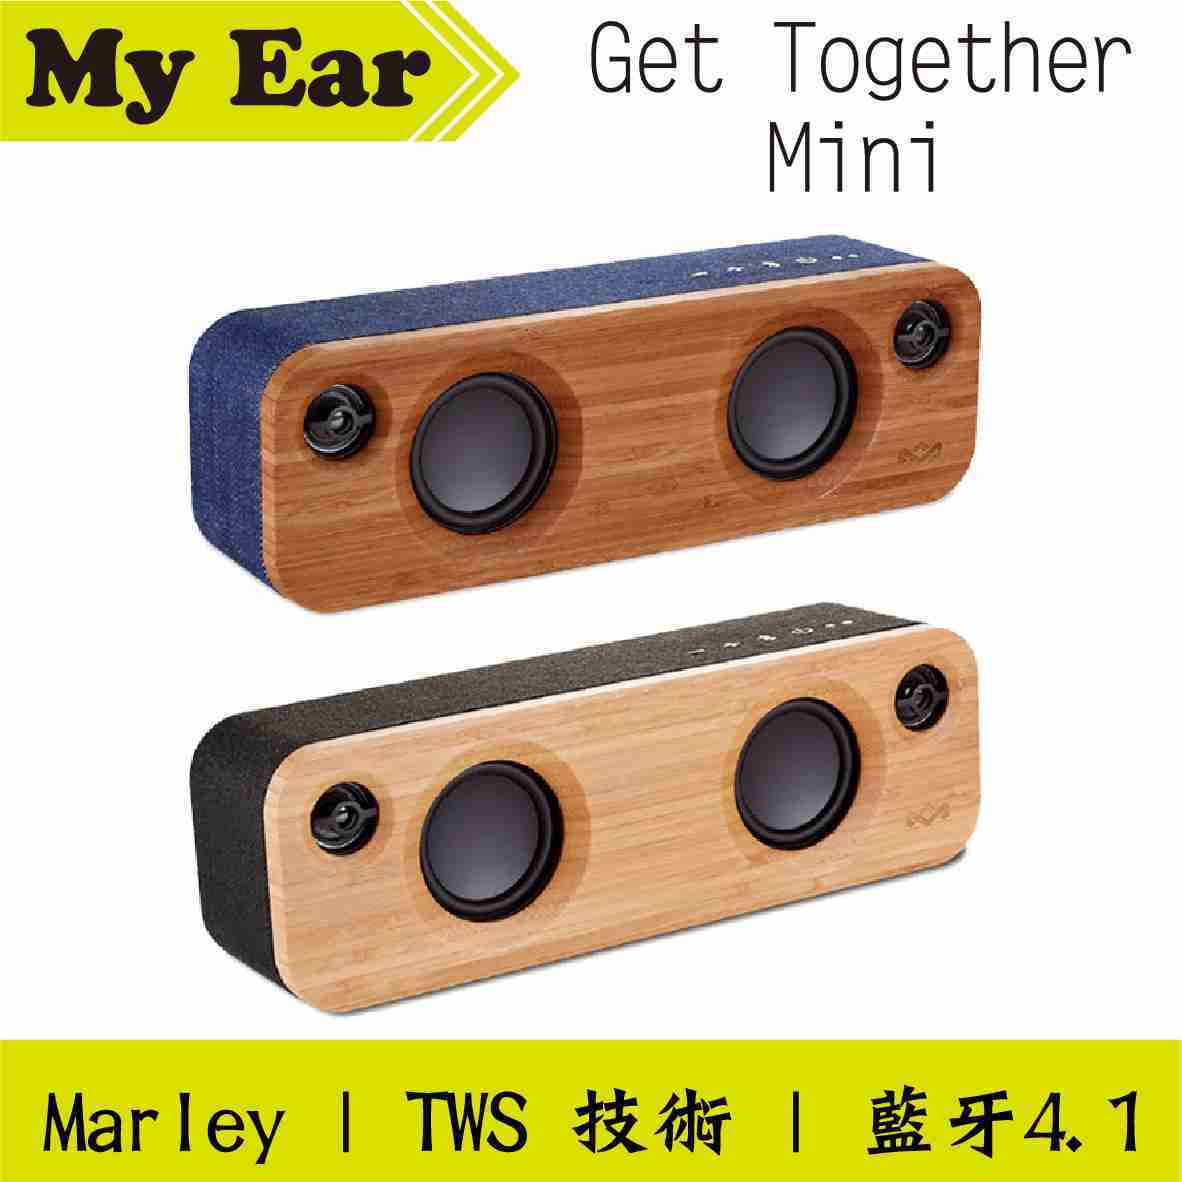 Marley Get Together Mini 兩色 藍芽 木質 喇叭 | My Ear耳機專門店